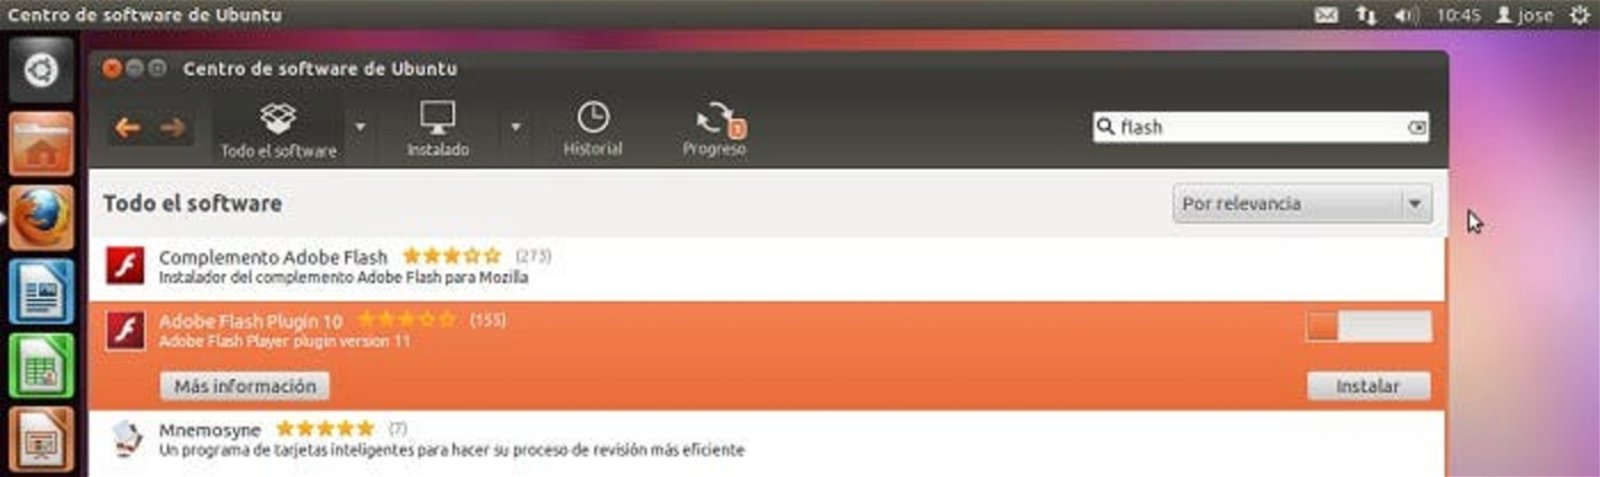 Instalando Flash en Ubuntu